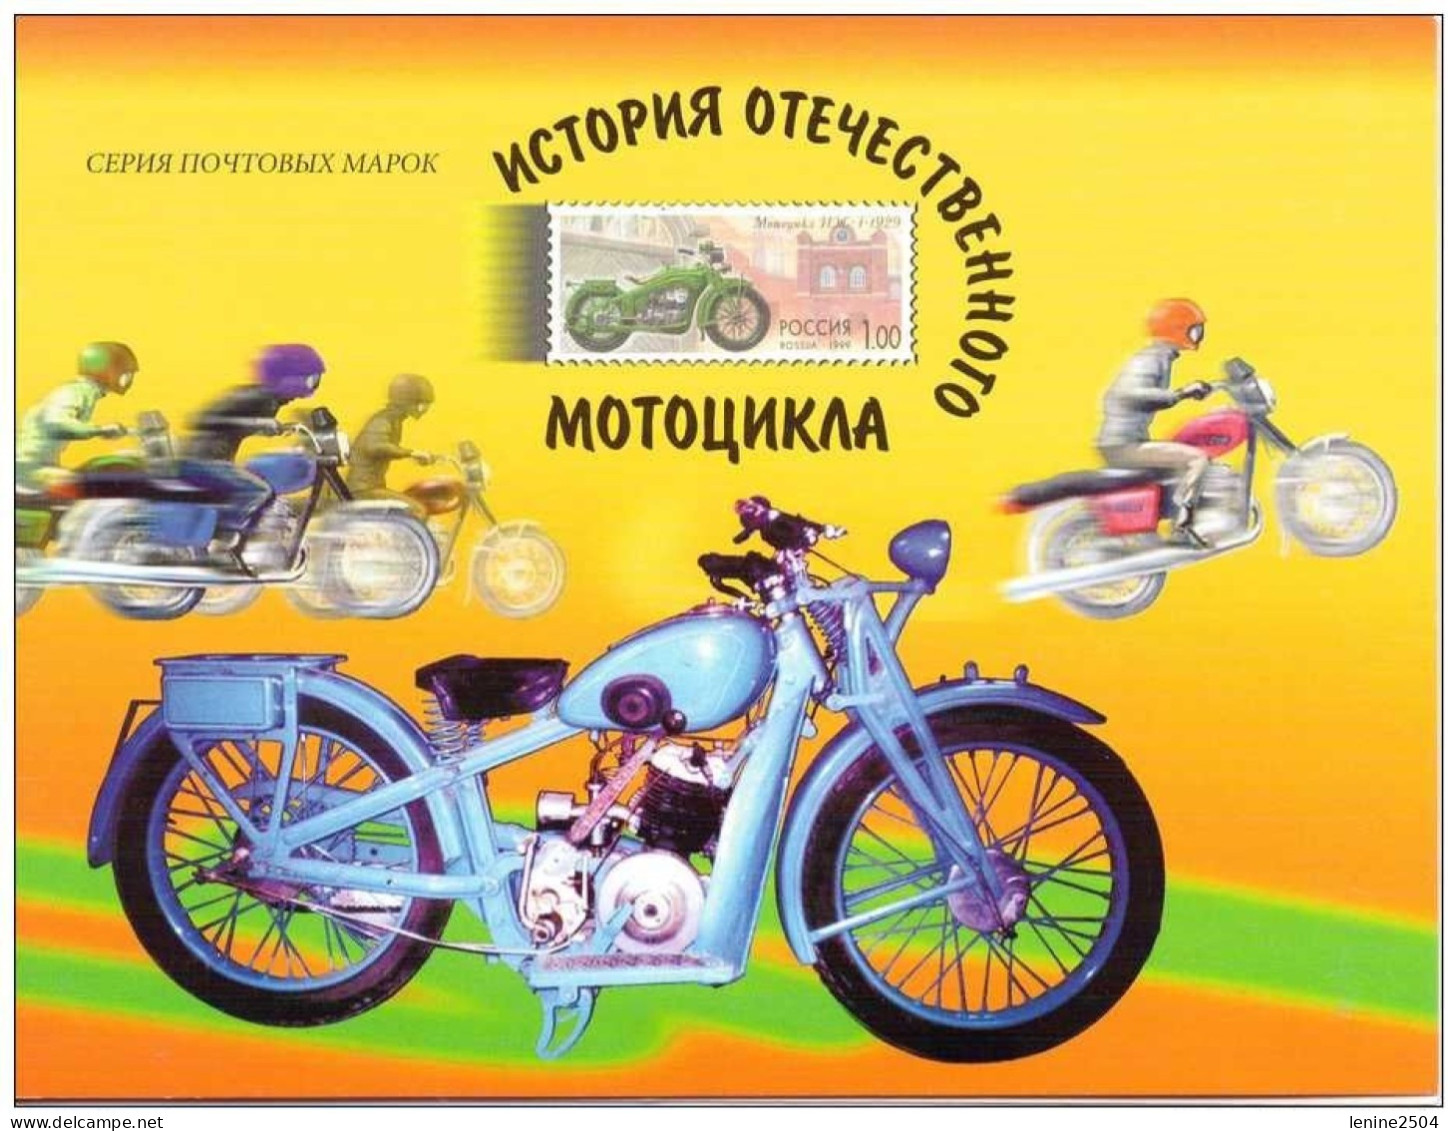 Russie 1999 Yvert N° 6423-6427** Emission 1er Jour Carnet Prestige Folder Booklet. - Ongebruikt